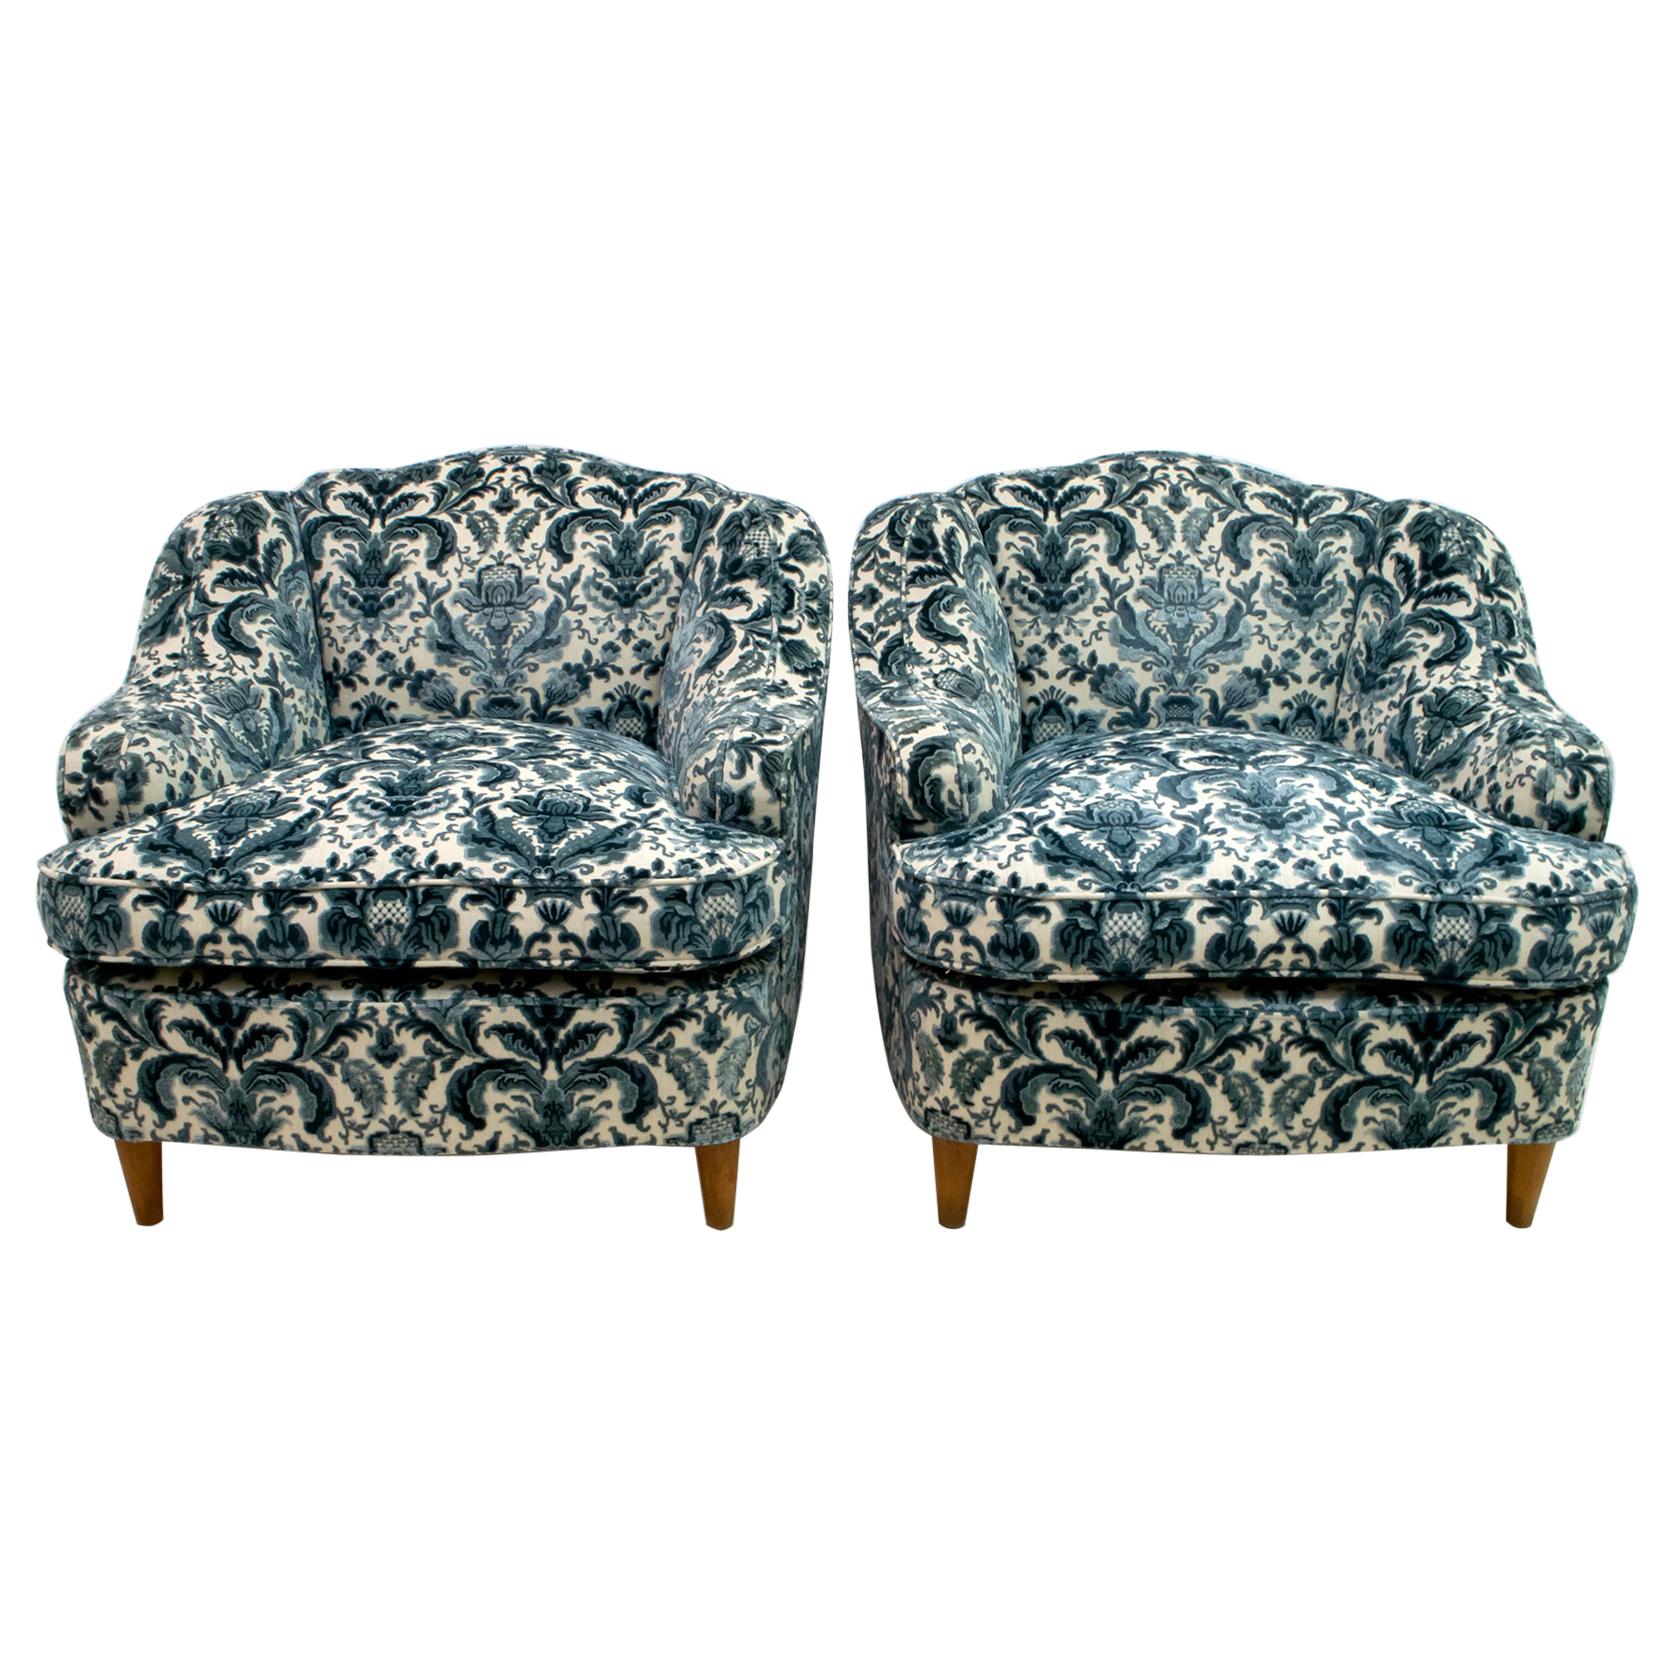 Pair of After Gio Ponti Mid-Century Modern Italian Textured Velvet Armchairs